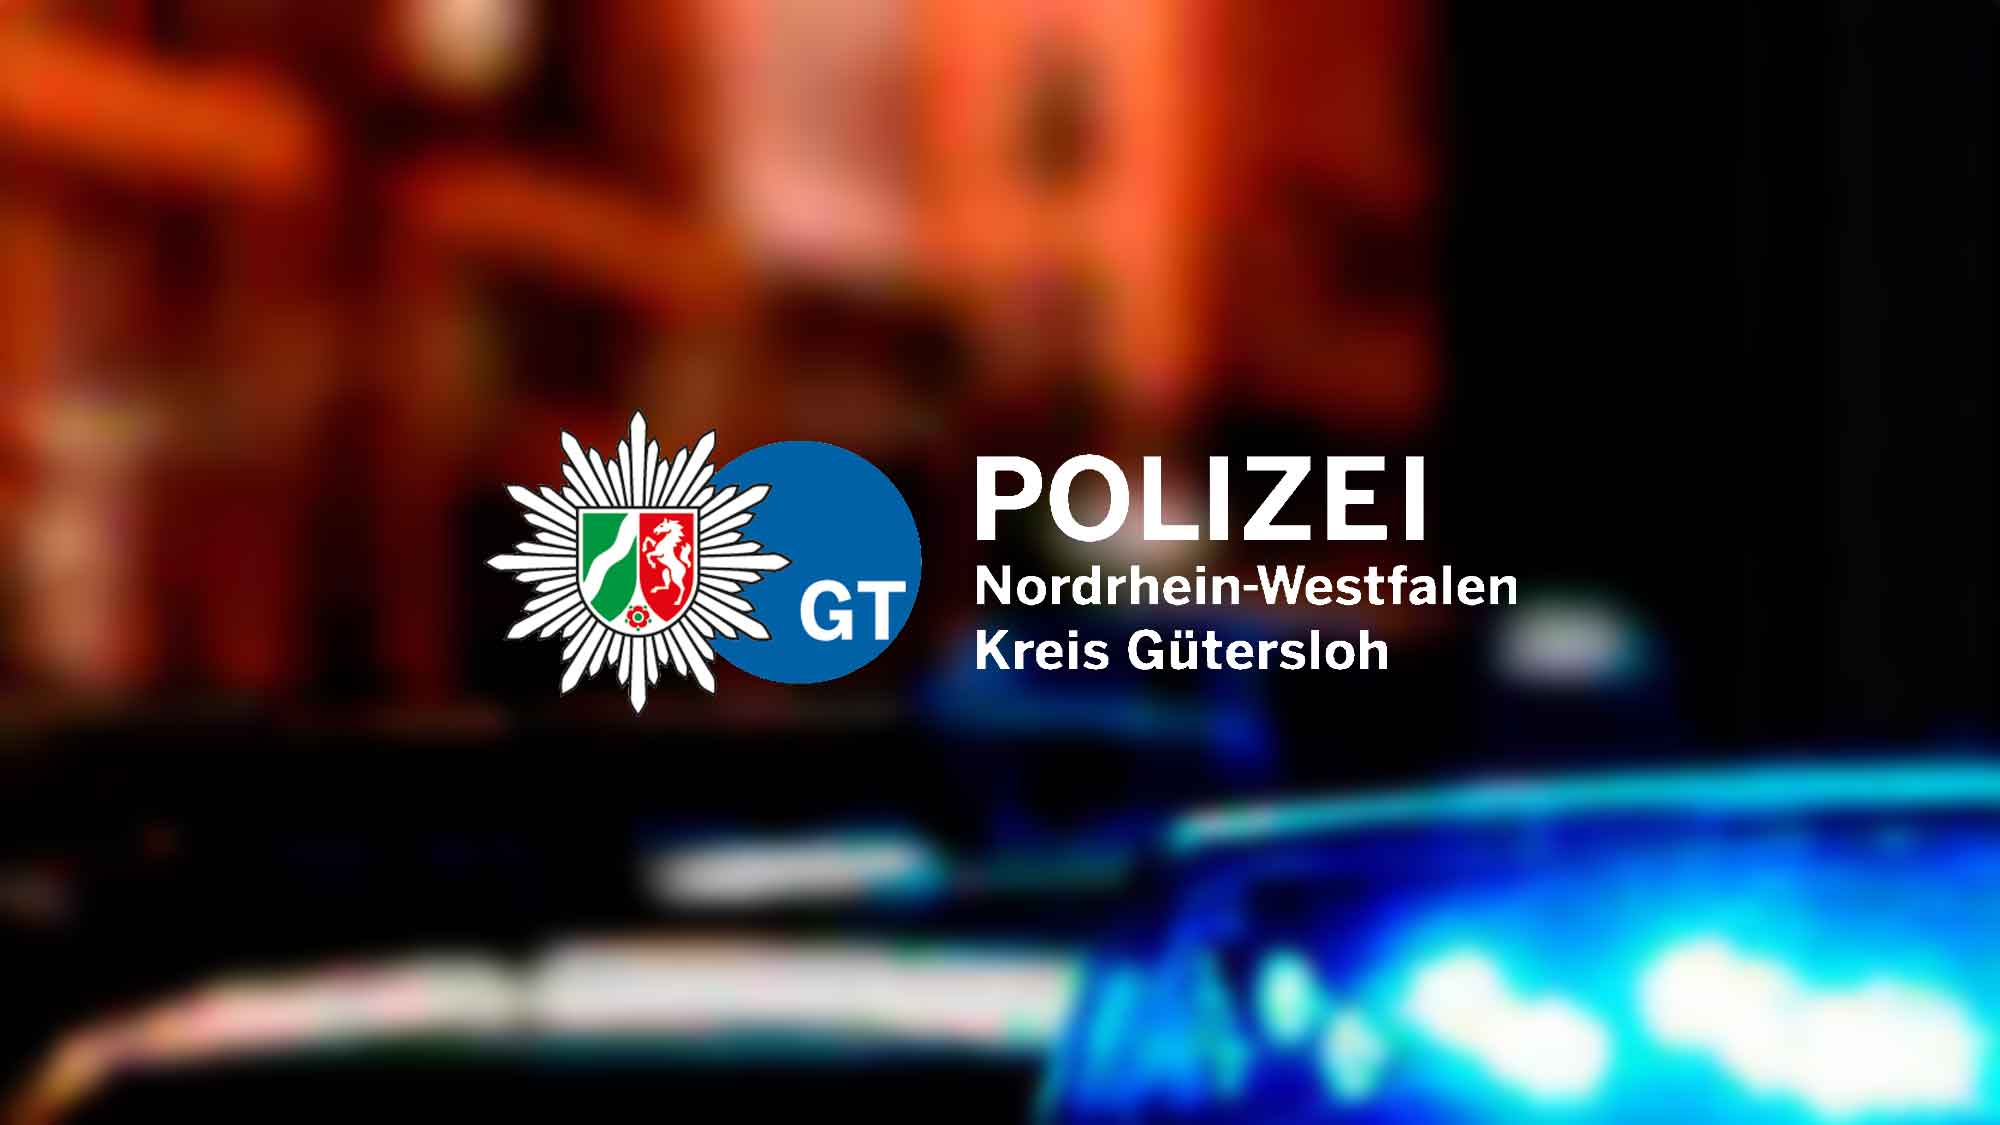 Polizei Gütersloh: Ermittlungsverfahren gegen 27 jährigen Mann eingeleitet – diverse Außenspiegel beschädigt